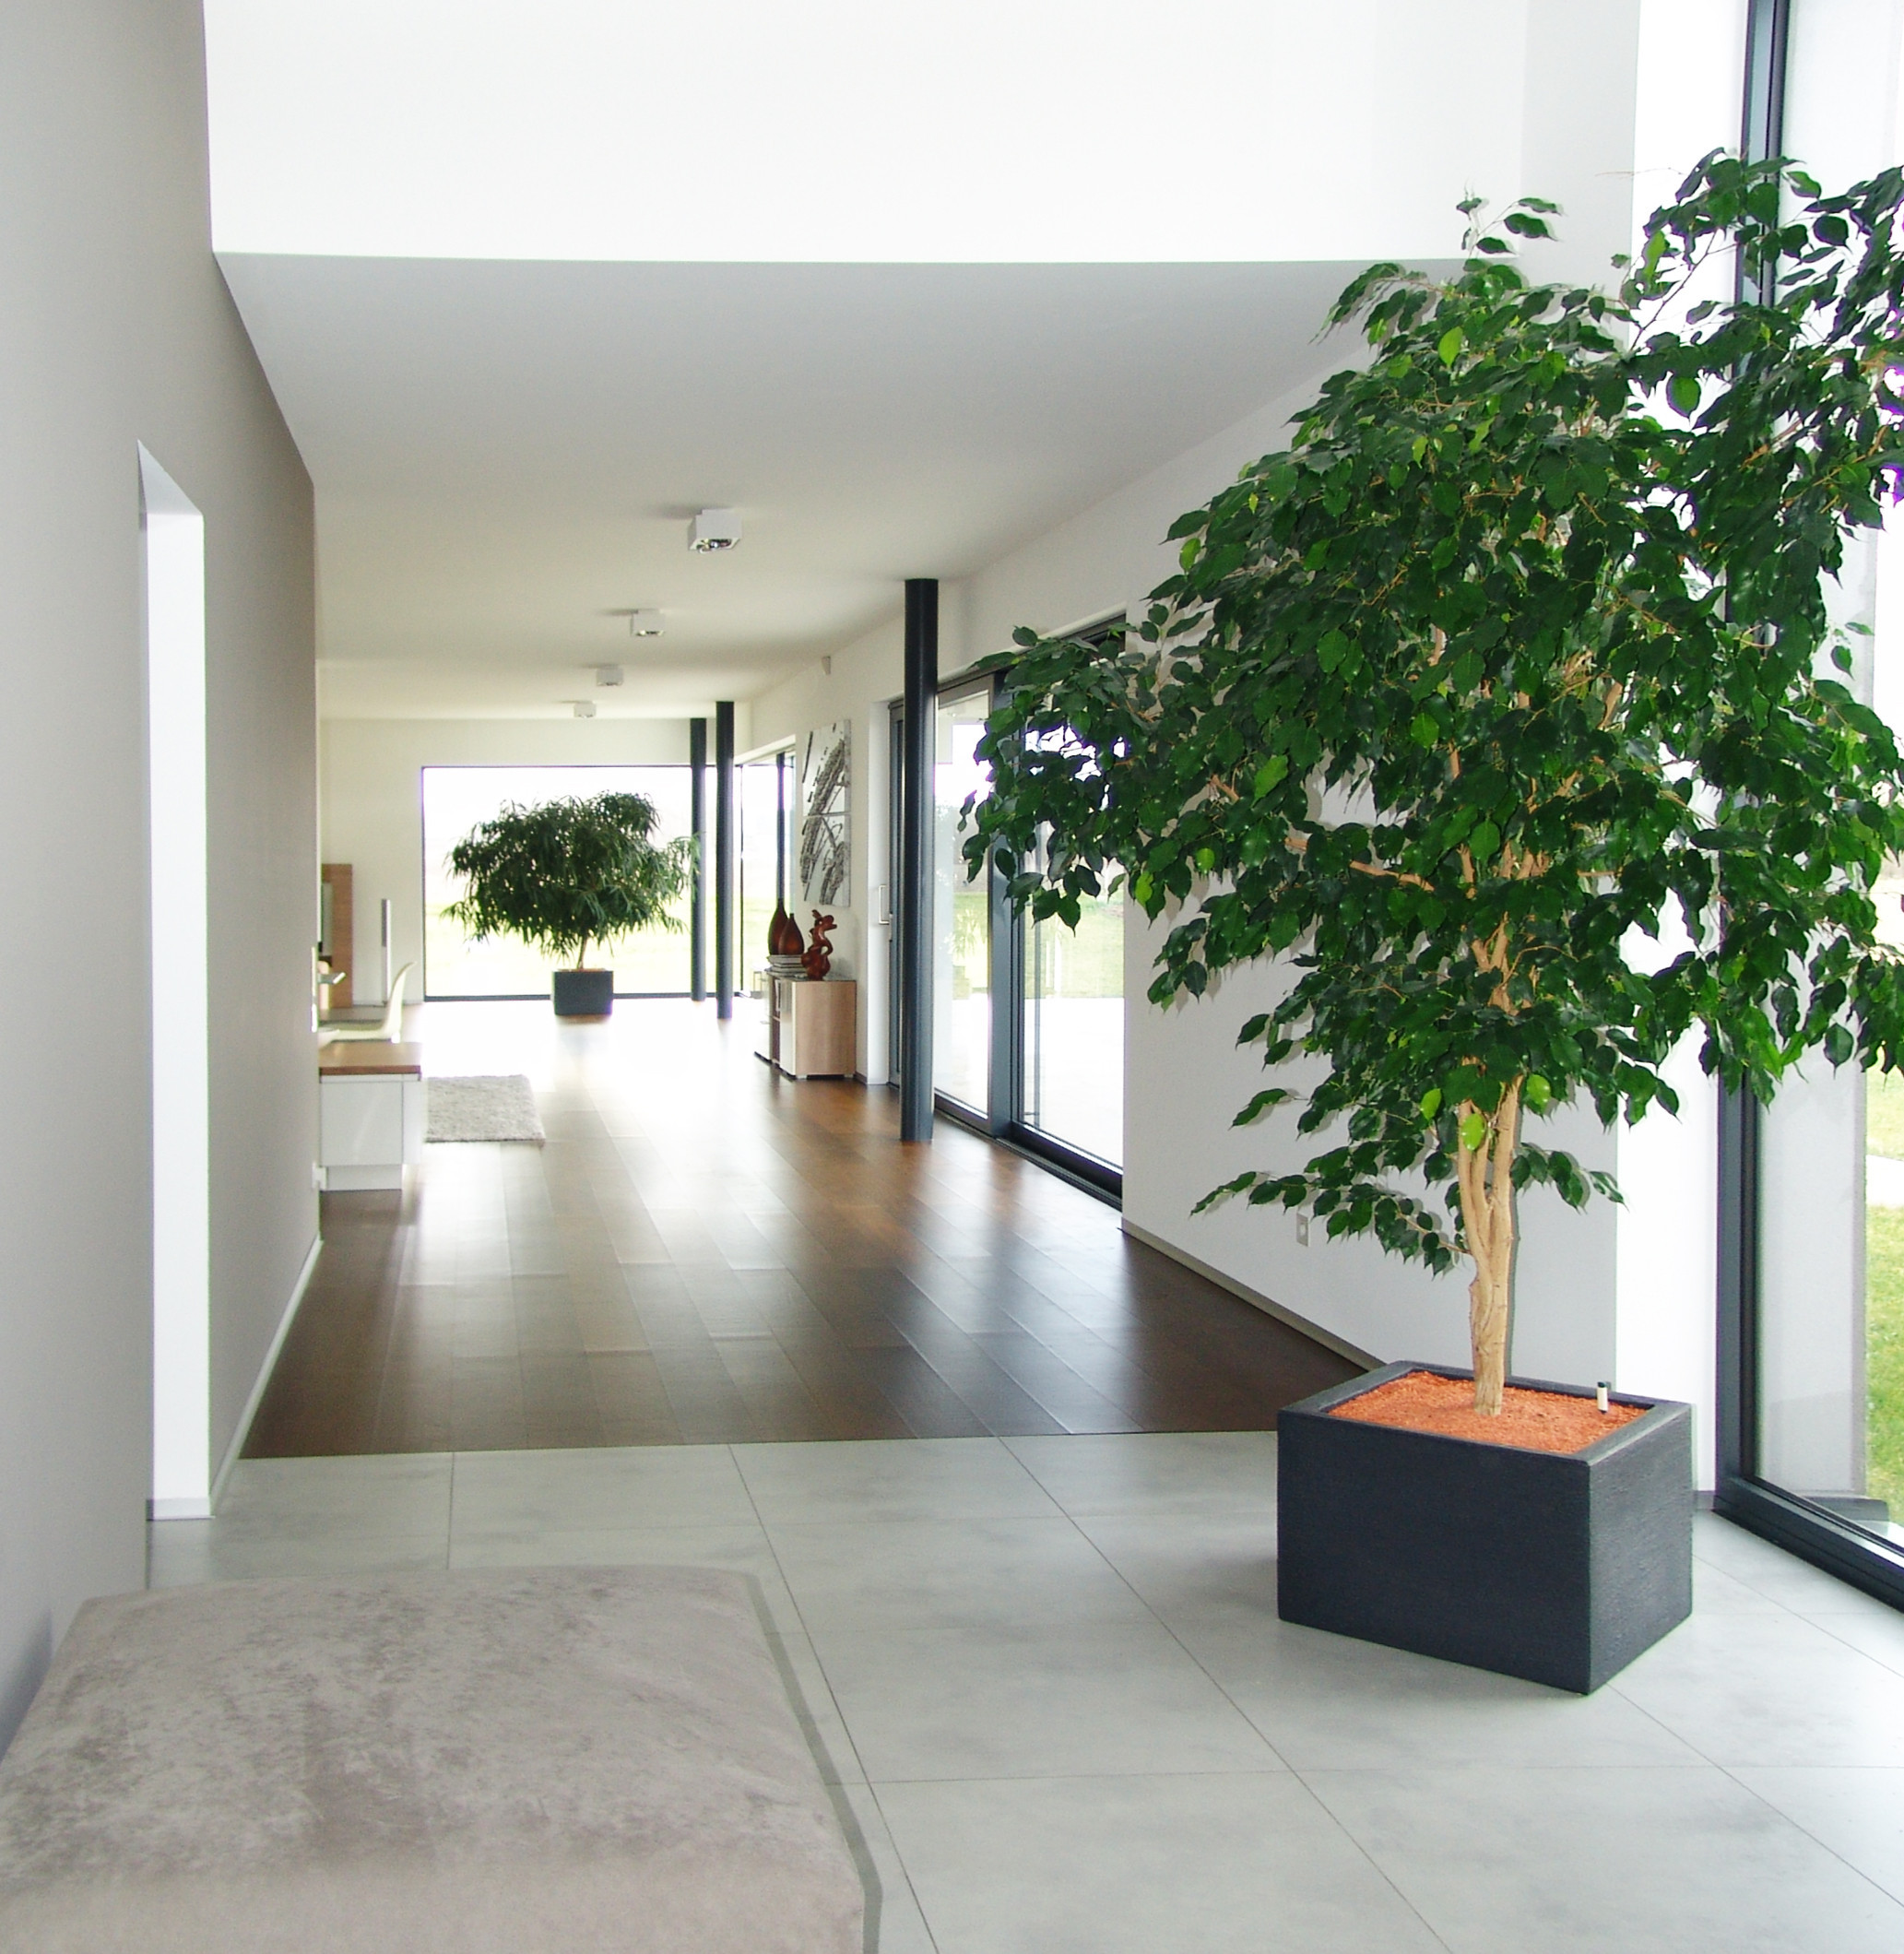 Wohnzimmer Pflanzen
 100 Moderne Grosse Zimmerpflanzen Bilder Ideen